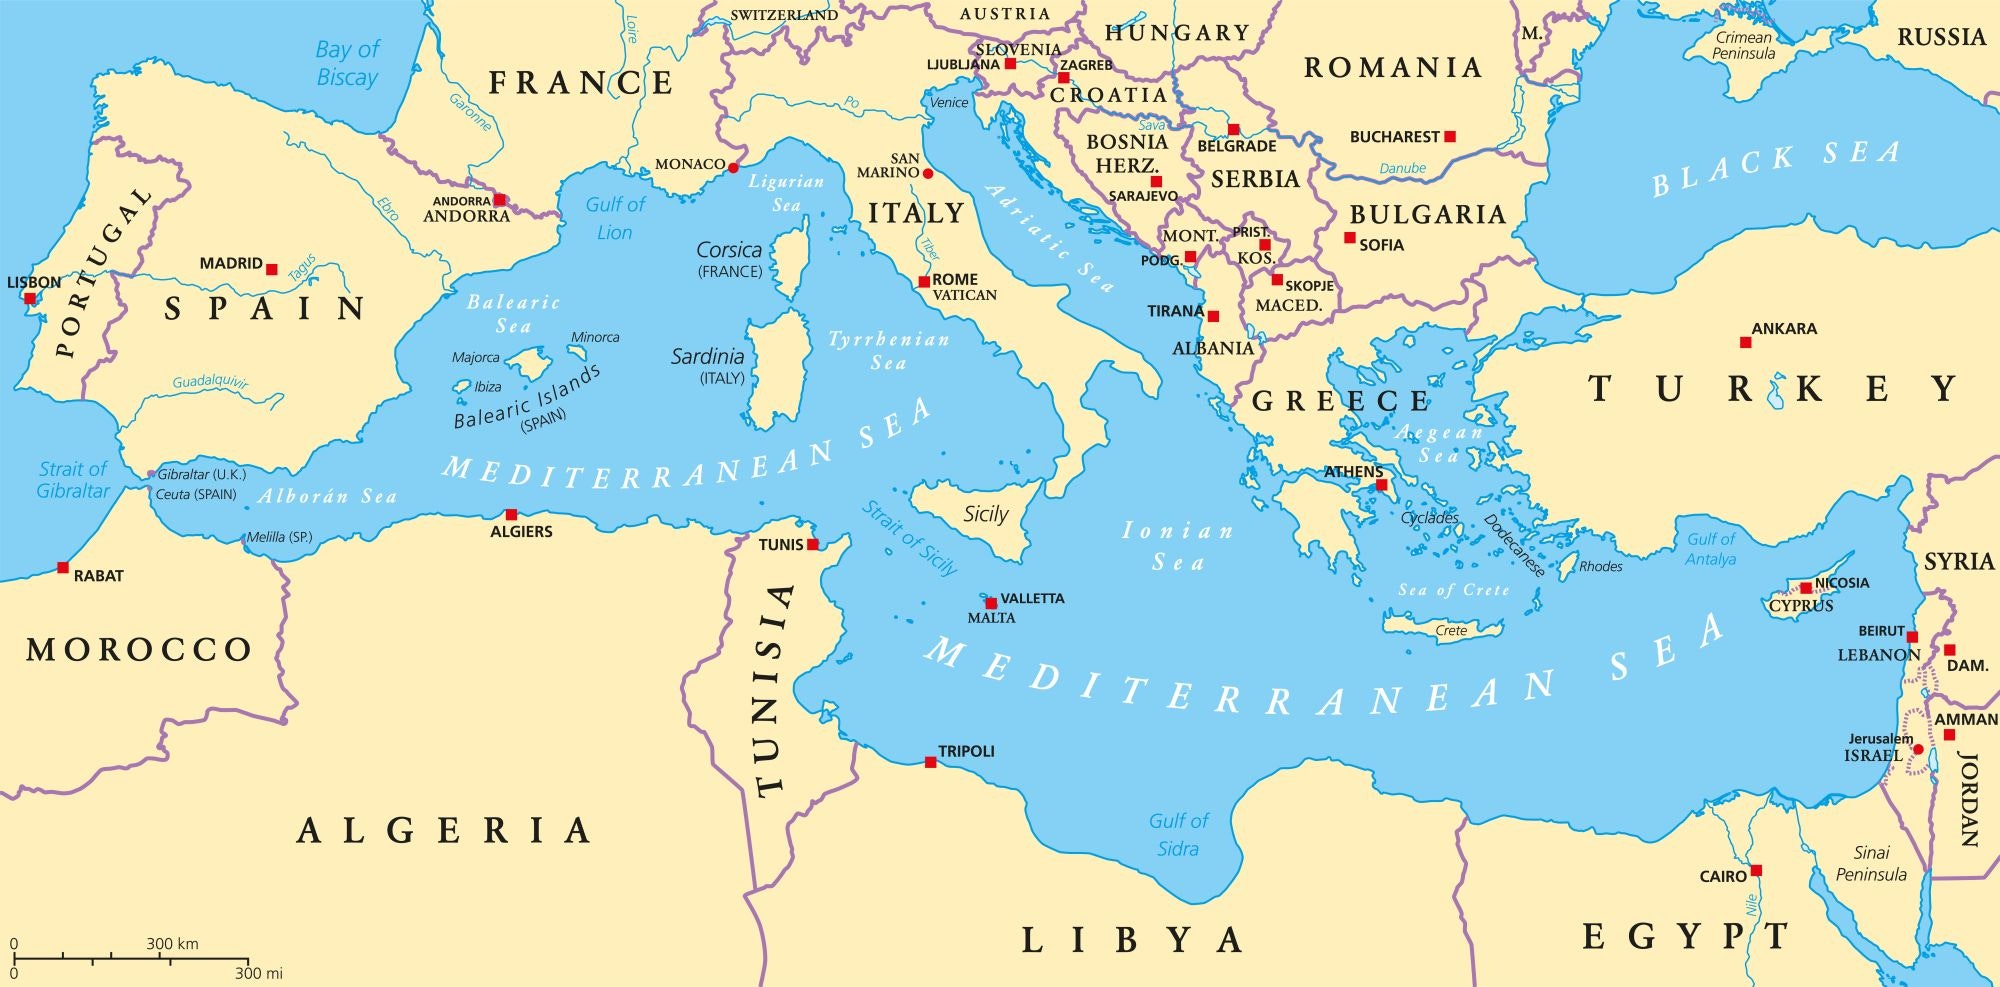 Mappa del Mar Mediterraneo e delle terre circostanti